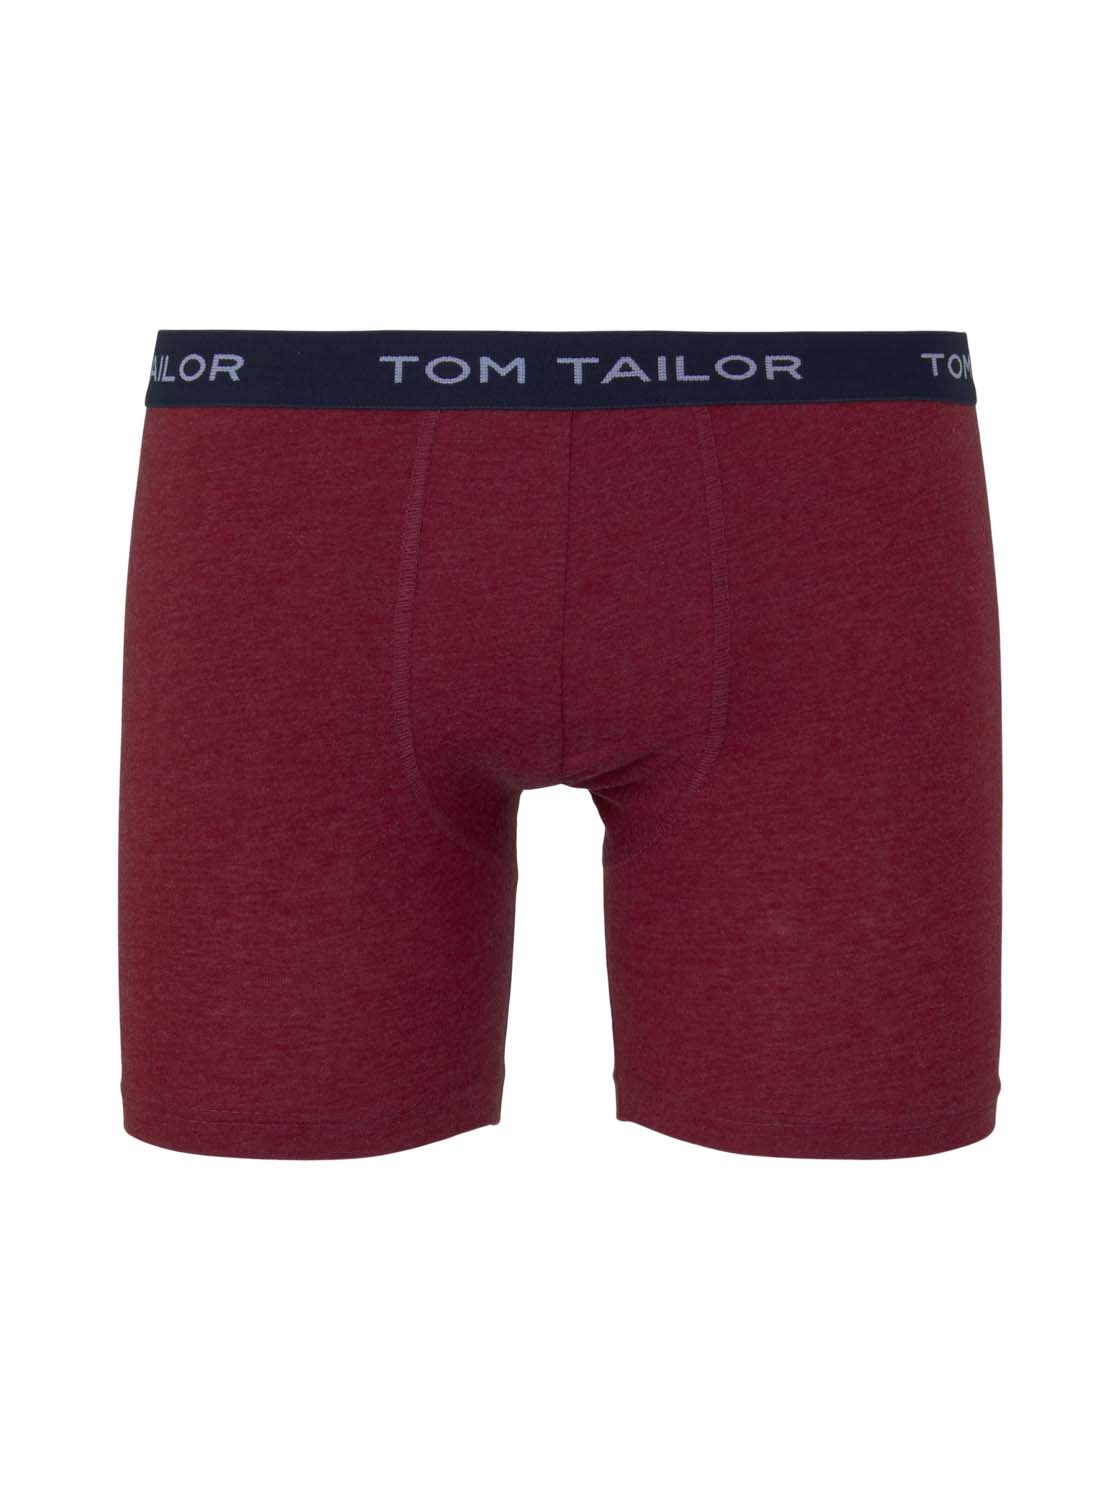 TOM TAILOR Herren 2er Pack Long Pants in Melange-Optik, rot, Gr.XXL/8 günstig online kaufen